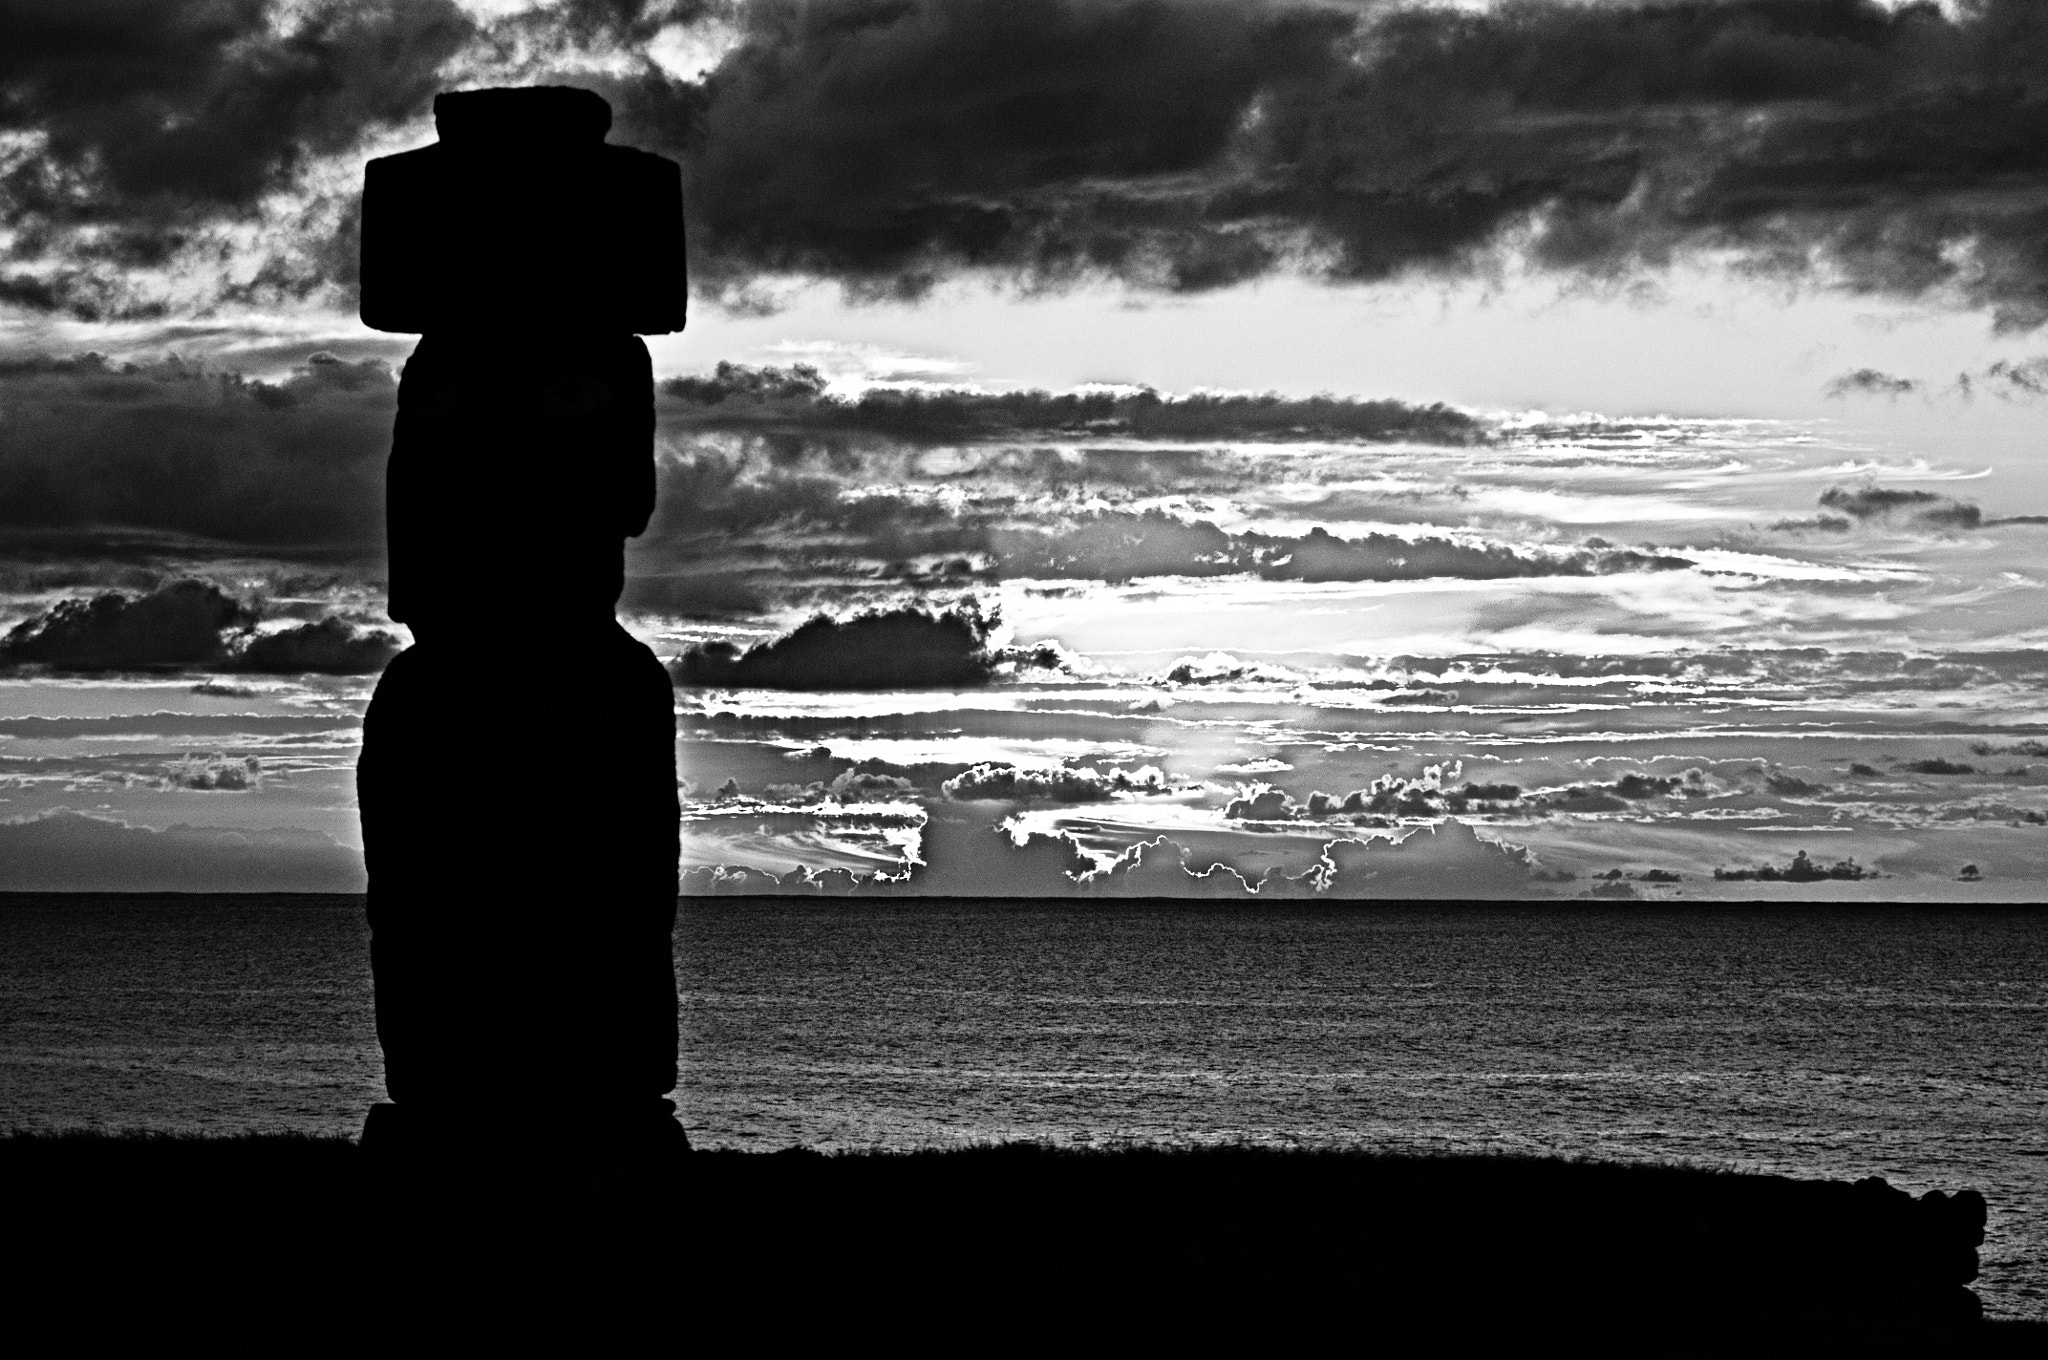 Nikon AF Zoom-Nikkor 80-200mm f/2.8D ED sample photo. Easter island photography